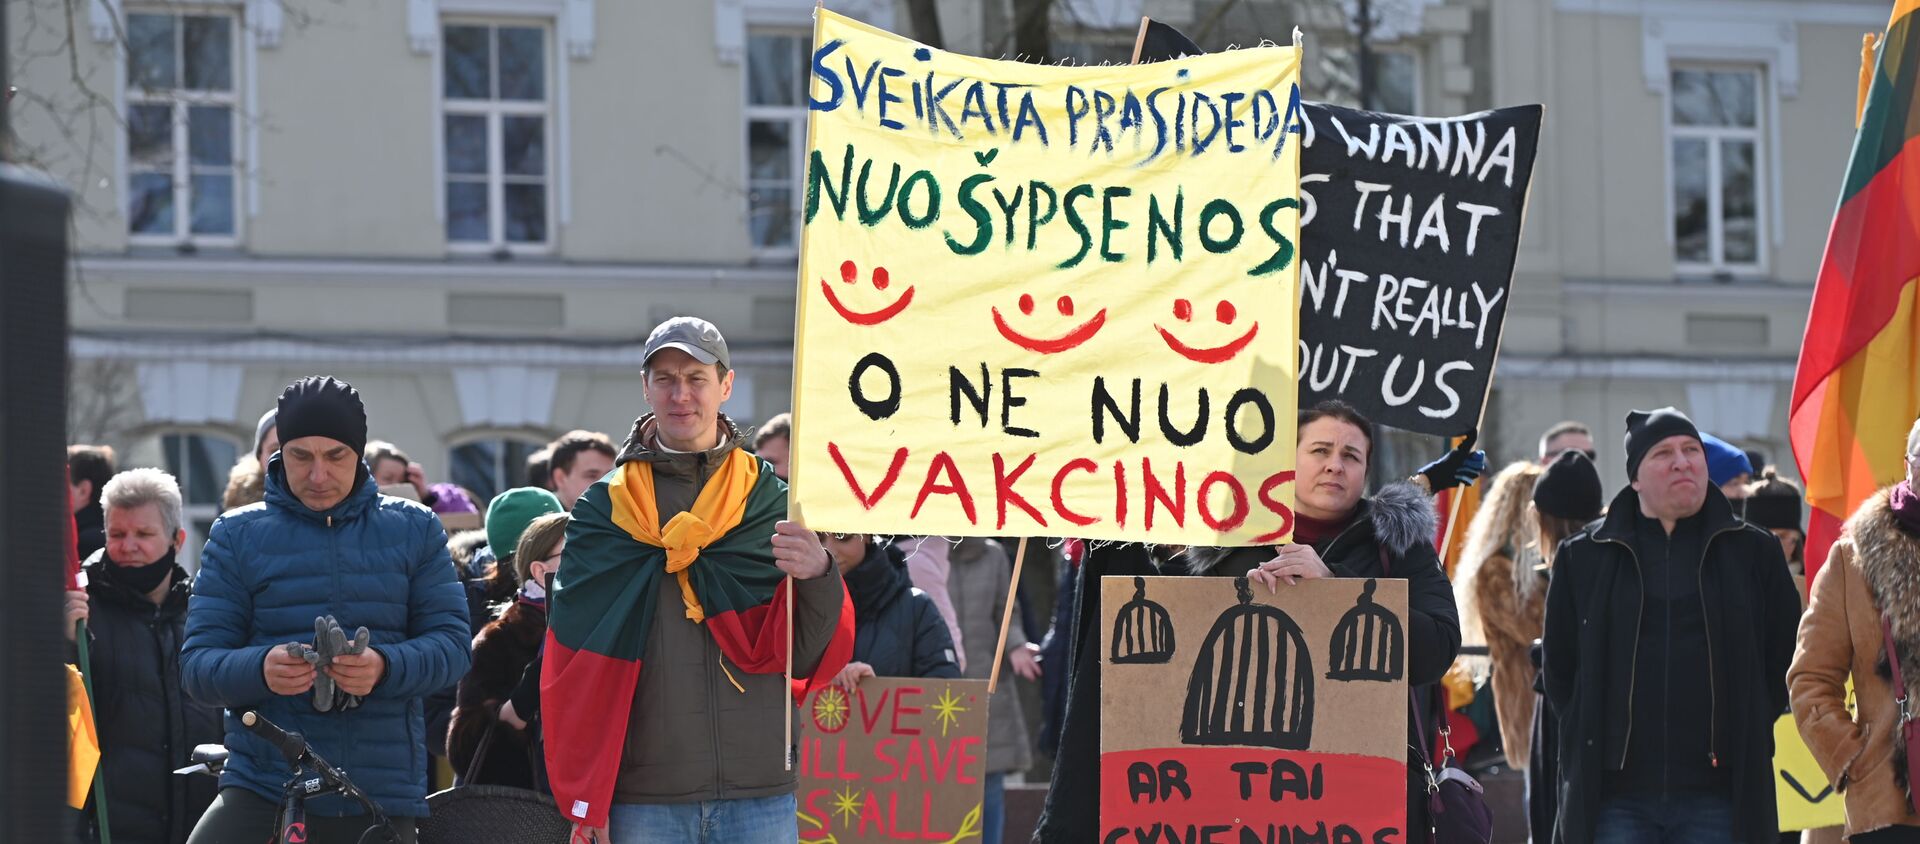 Nuotraukoje: mitingo dalyviai su plakatu Sveikata prasideda nuo šypsenos, o ne nuo vakcinos. - Sputnik Lietuva, 1920, 20.03.2021